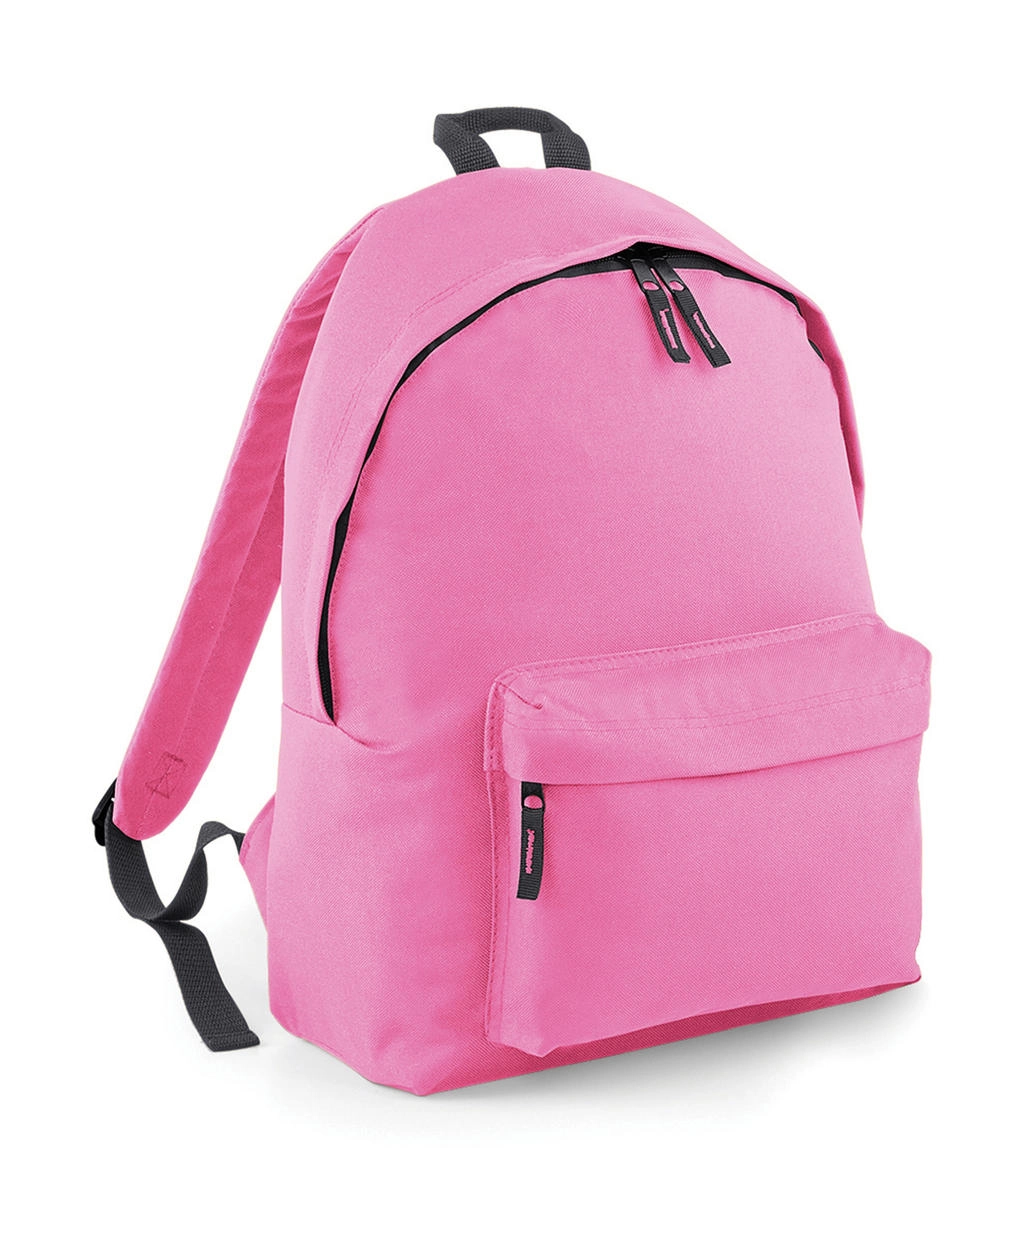 Original Fashion Backpack zum Besticken und Bedrucken in der Farbe Classic Pink/Graphite Grey mit Ihren Logo, Schriftzug oder Motiv.